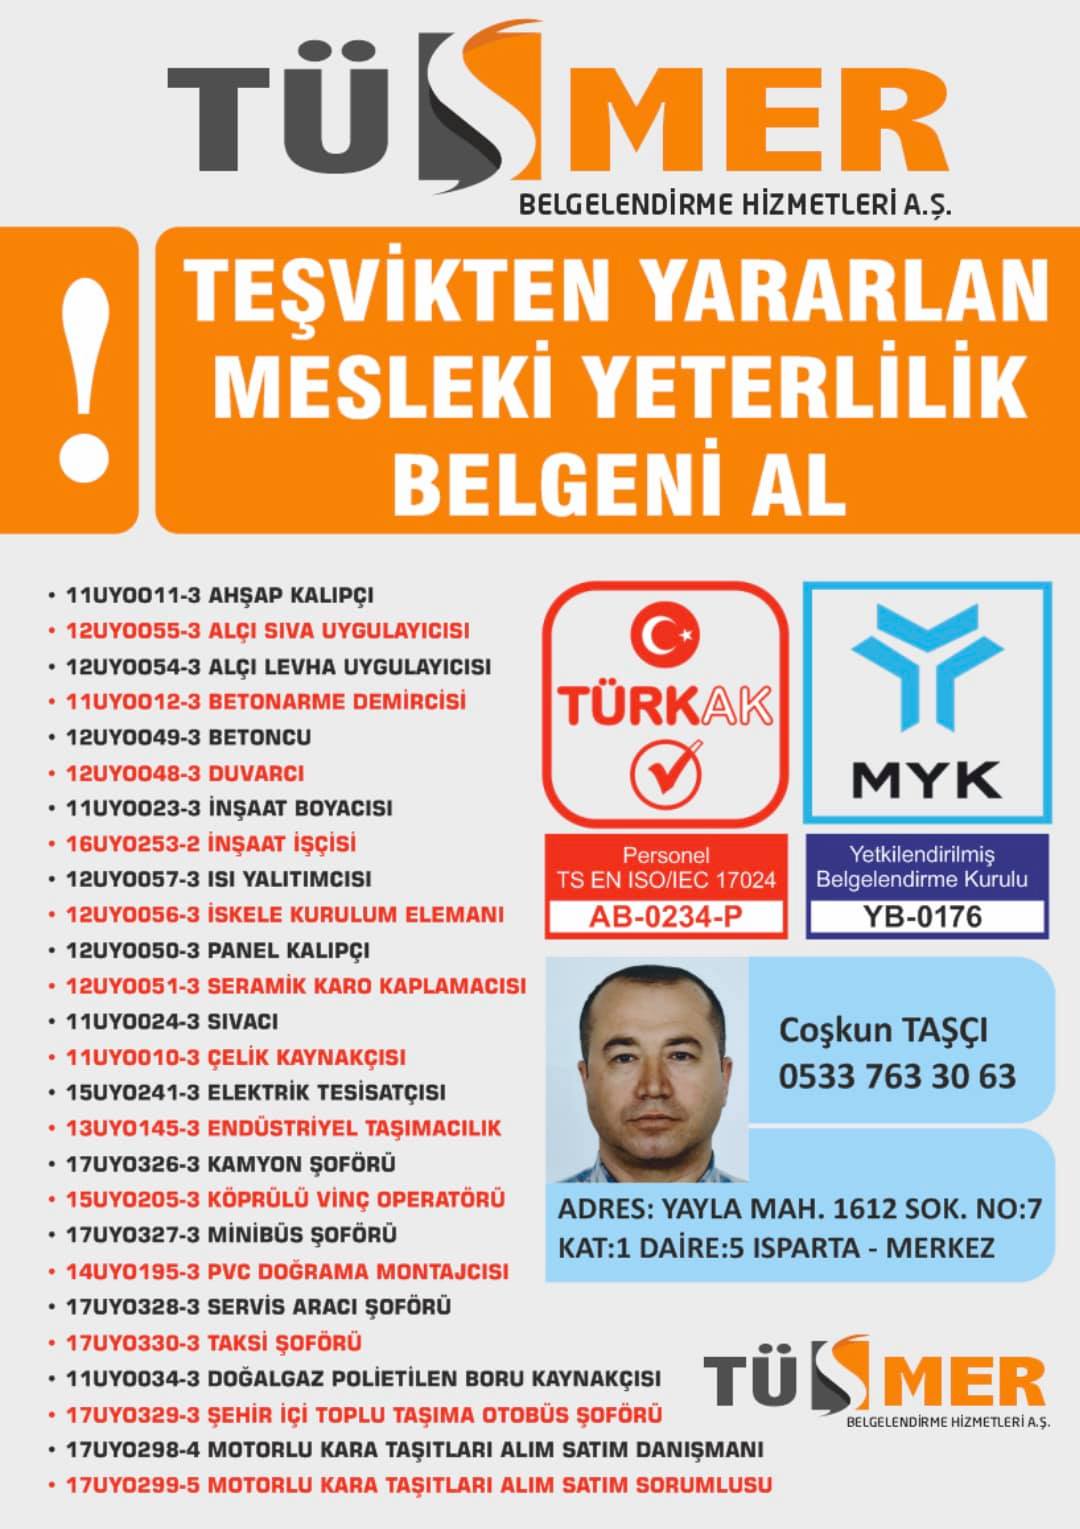 MYK MESLEKİ YETERLİLİK BELGESİ Esentepe Kartal İstanbul